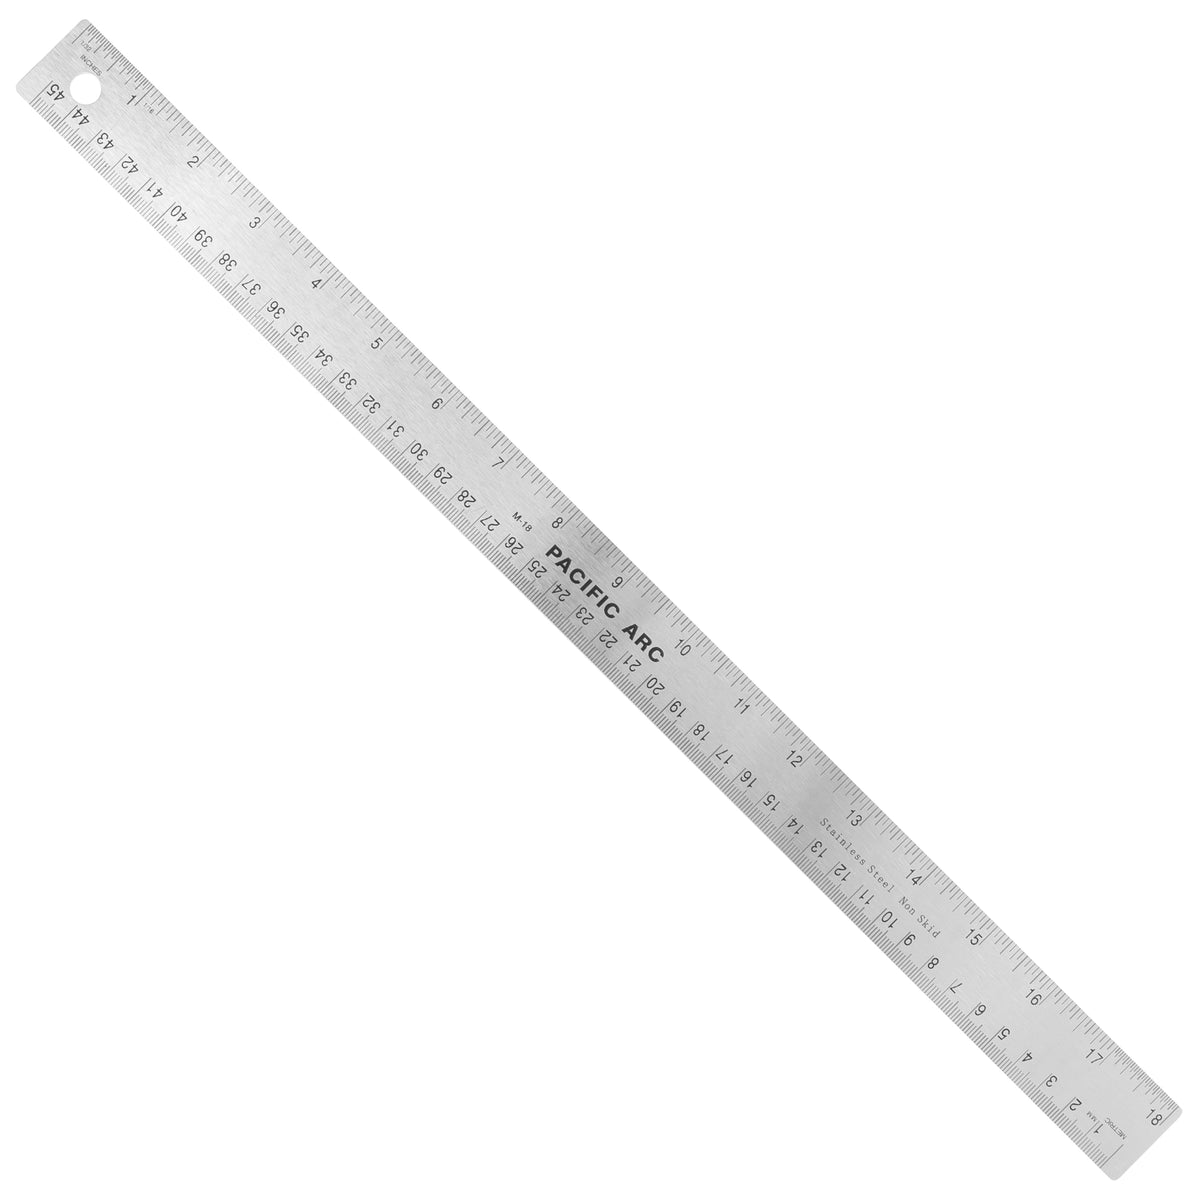 Alumicolor Non-Slip Straight Edge Ruler - 18